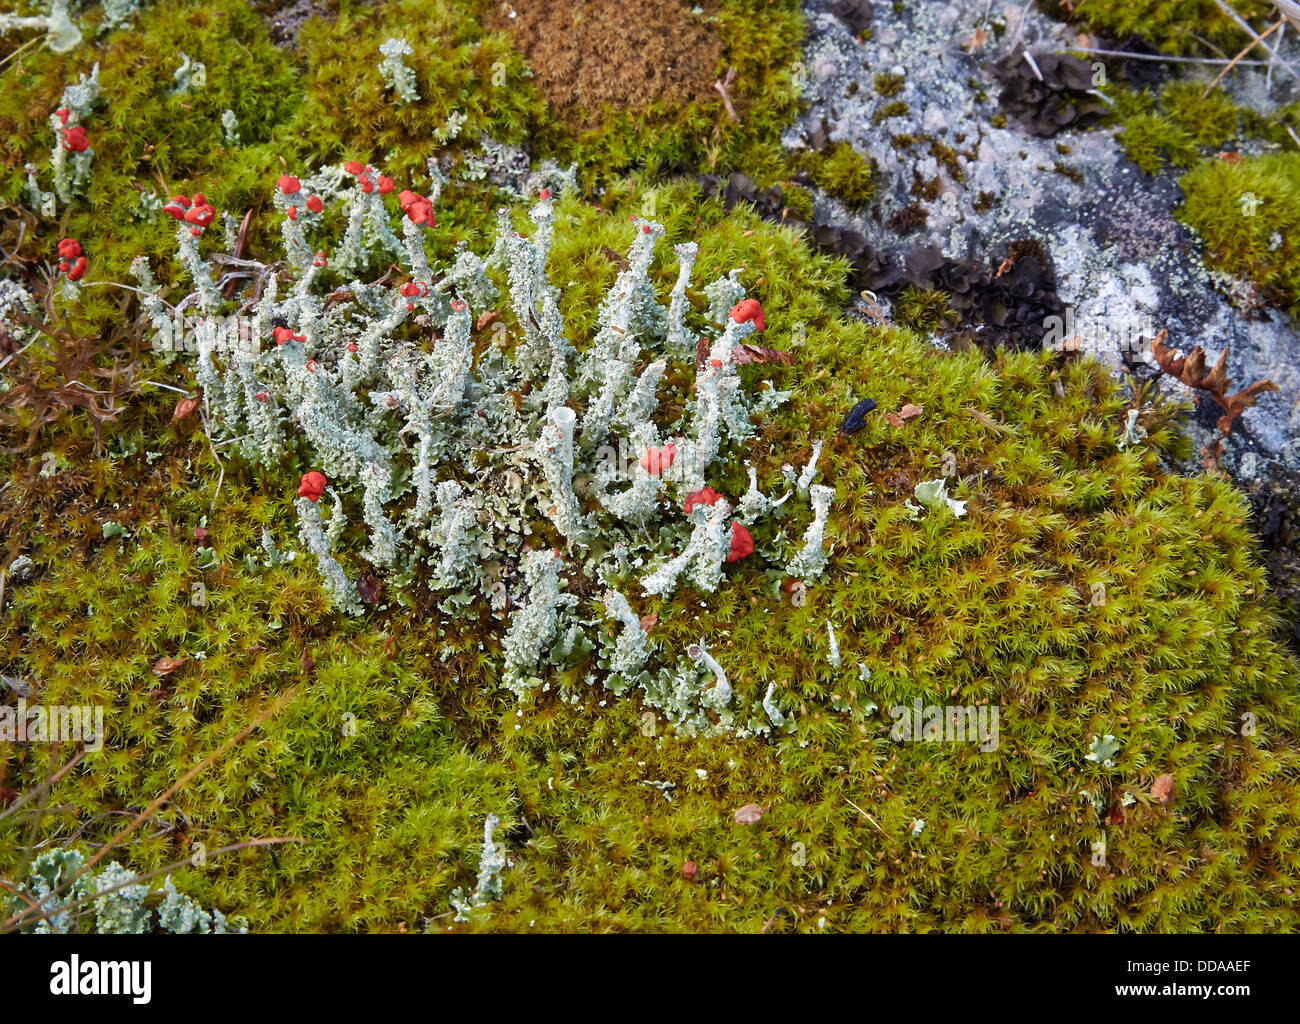 Cladonia Flechten-Arten mit scarlet rote Fruchtkörper wachsen unter Moos auf 1000m auf einem norwegischen Berg Stockfoto